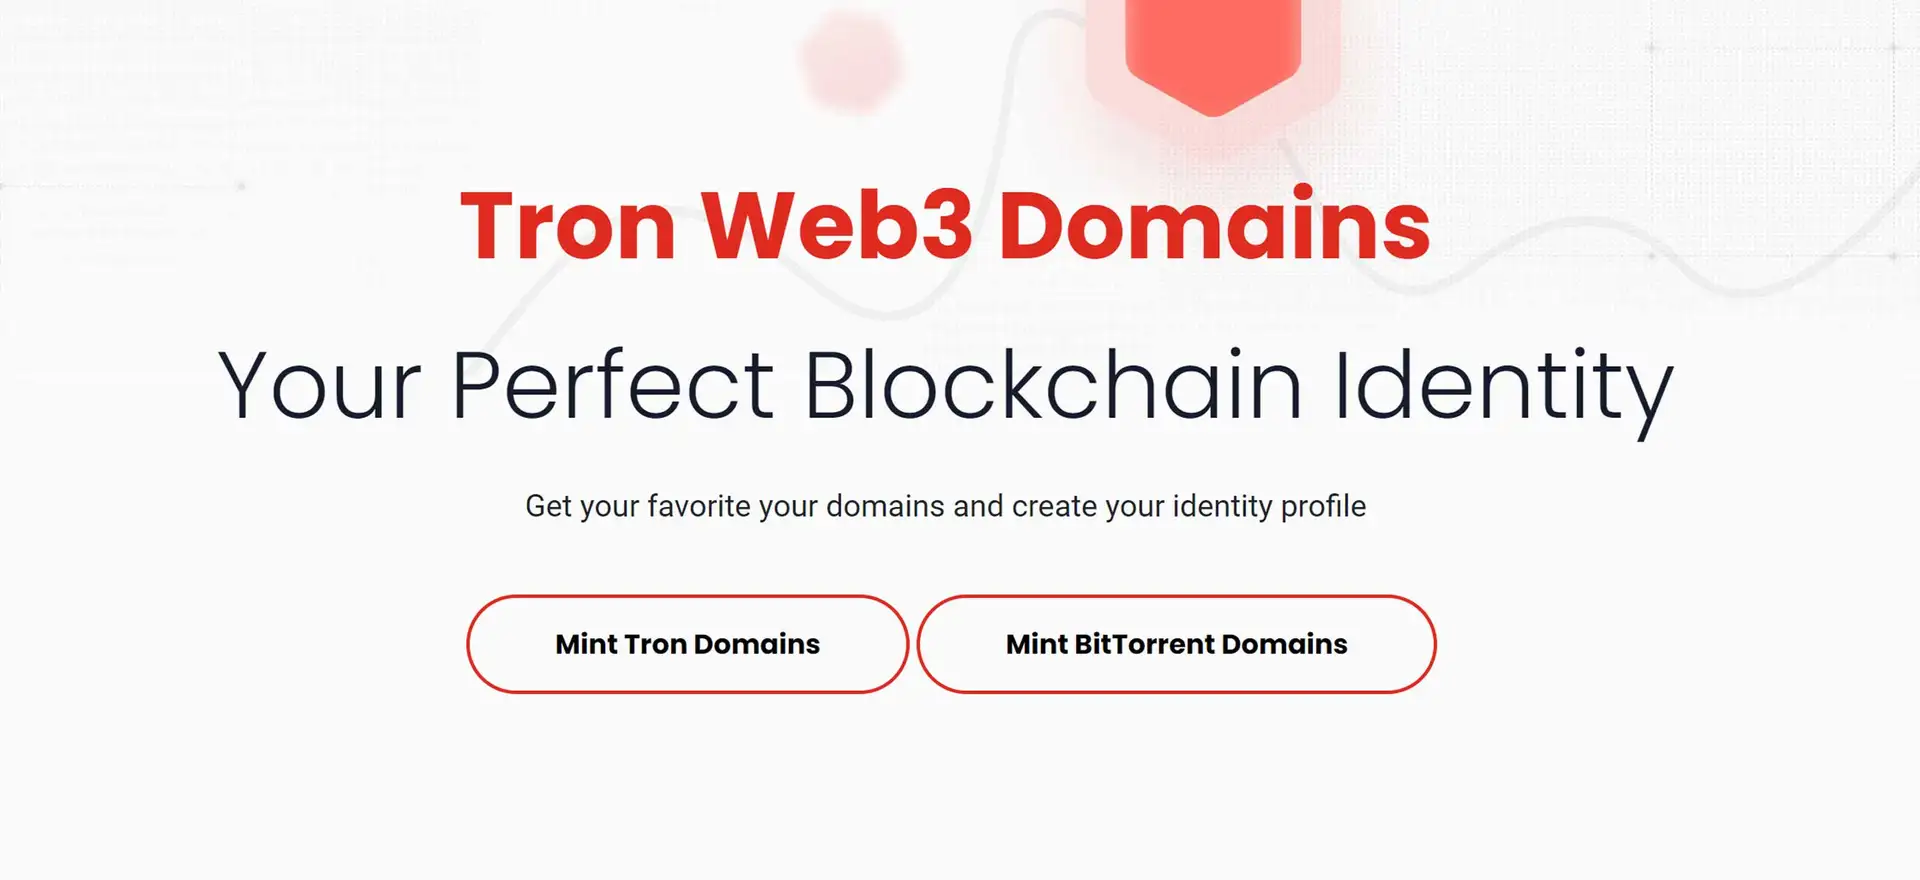 Tron Web3 Domains Review